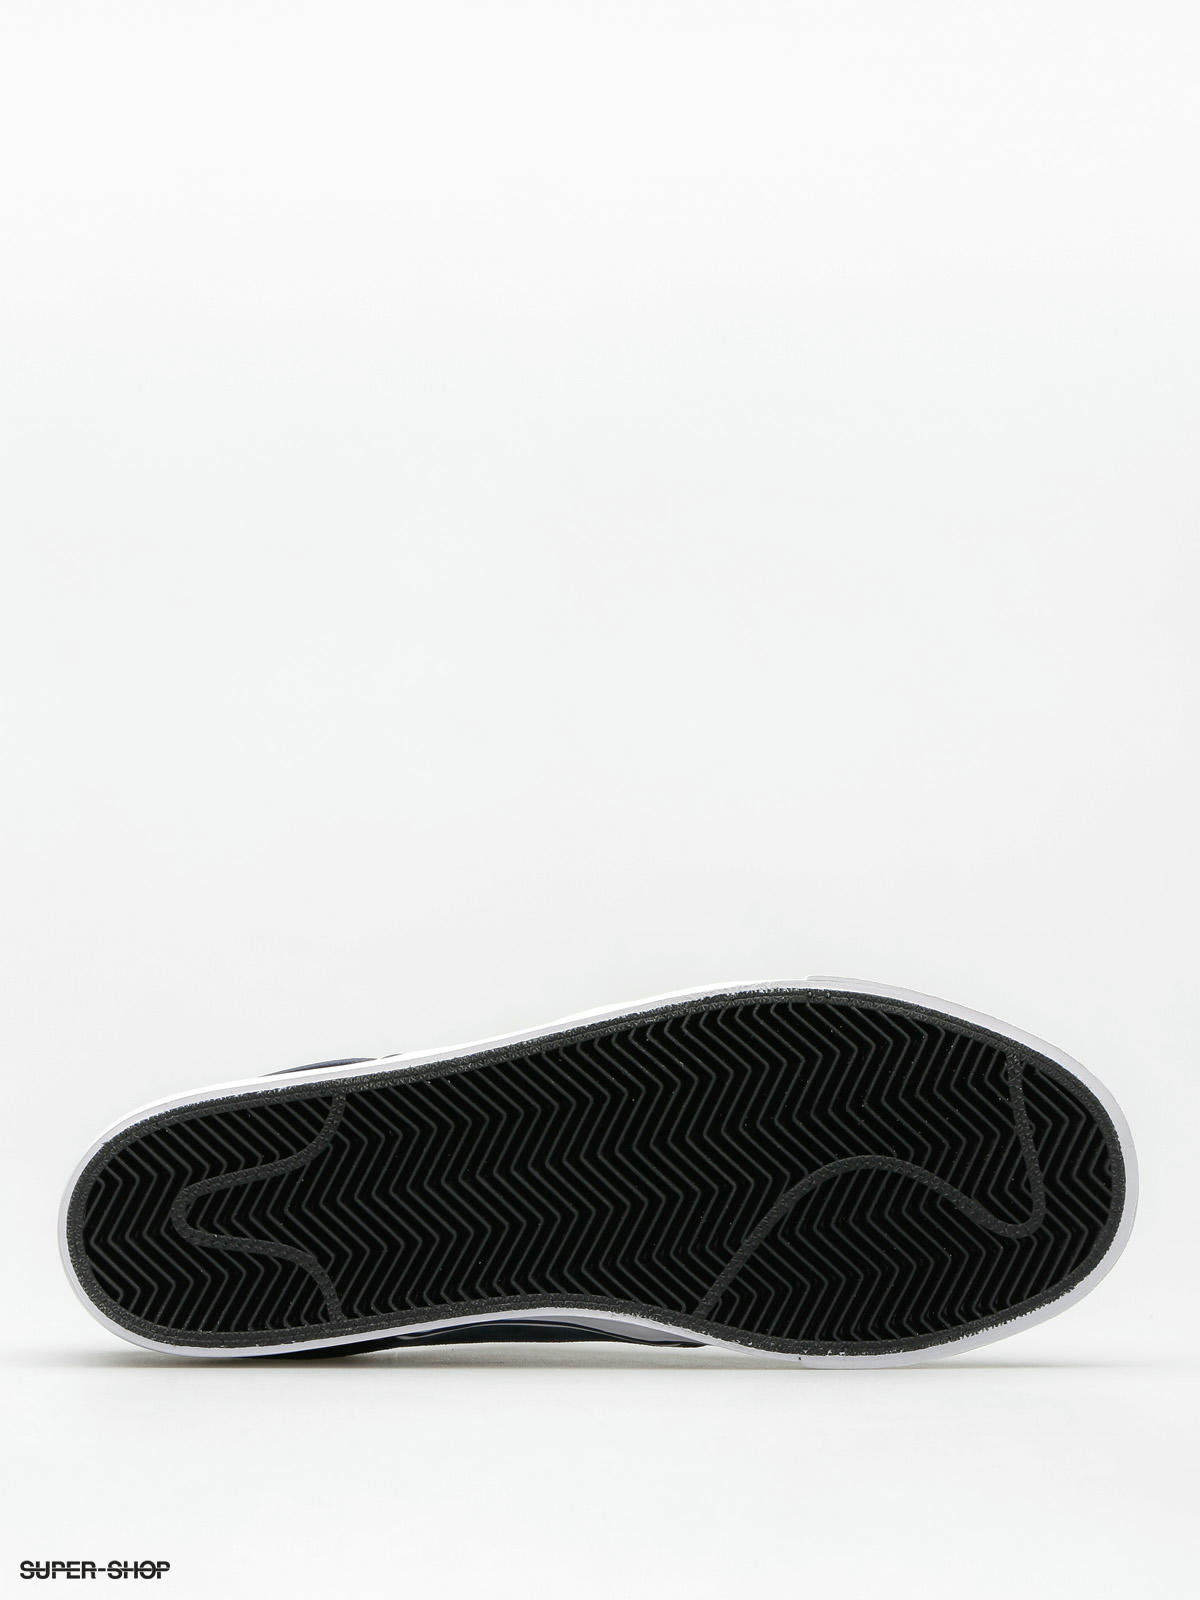 Nike SB Shoes Zoom Stefan Janoski grey black white)